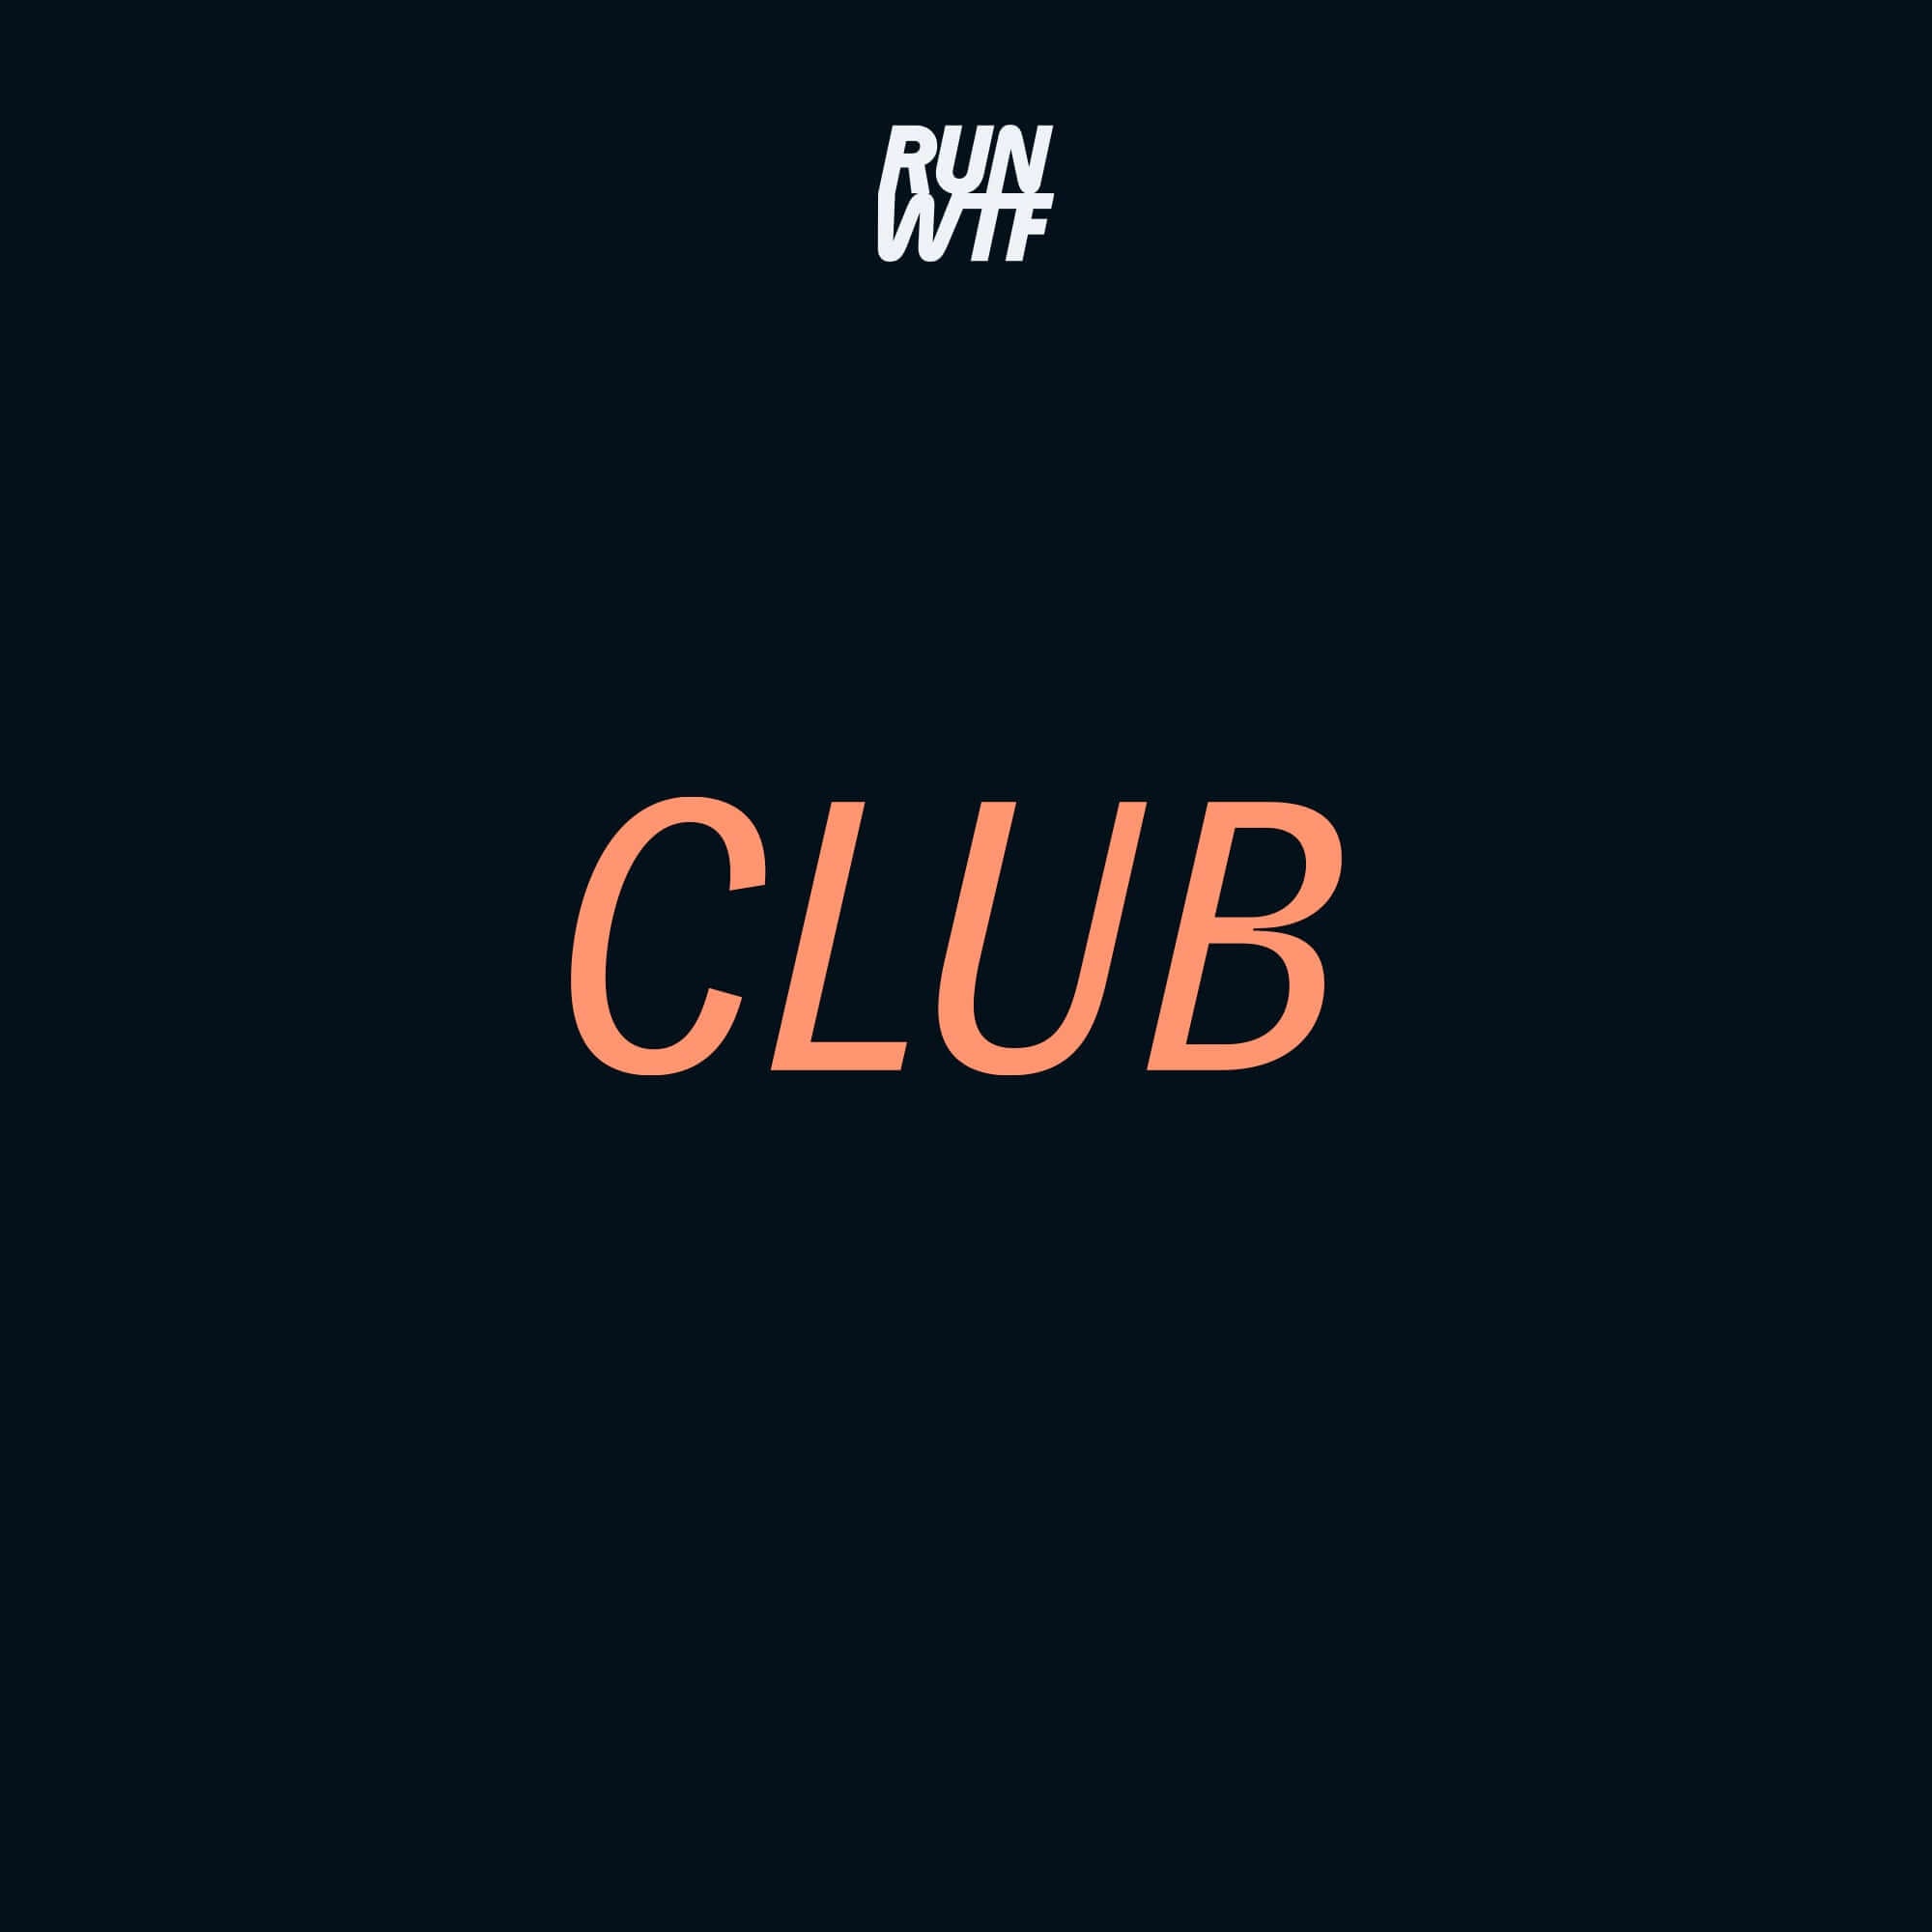 RUN WTF Club Membership Program